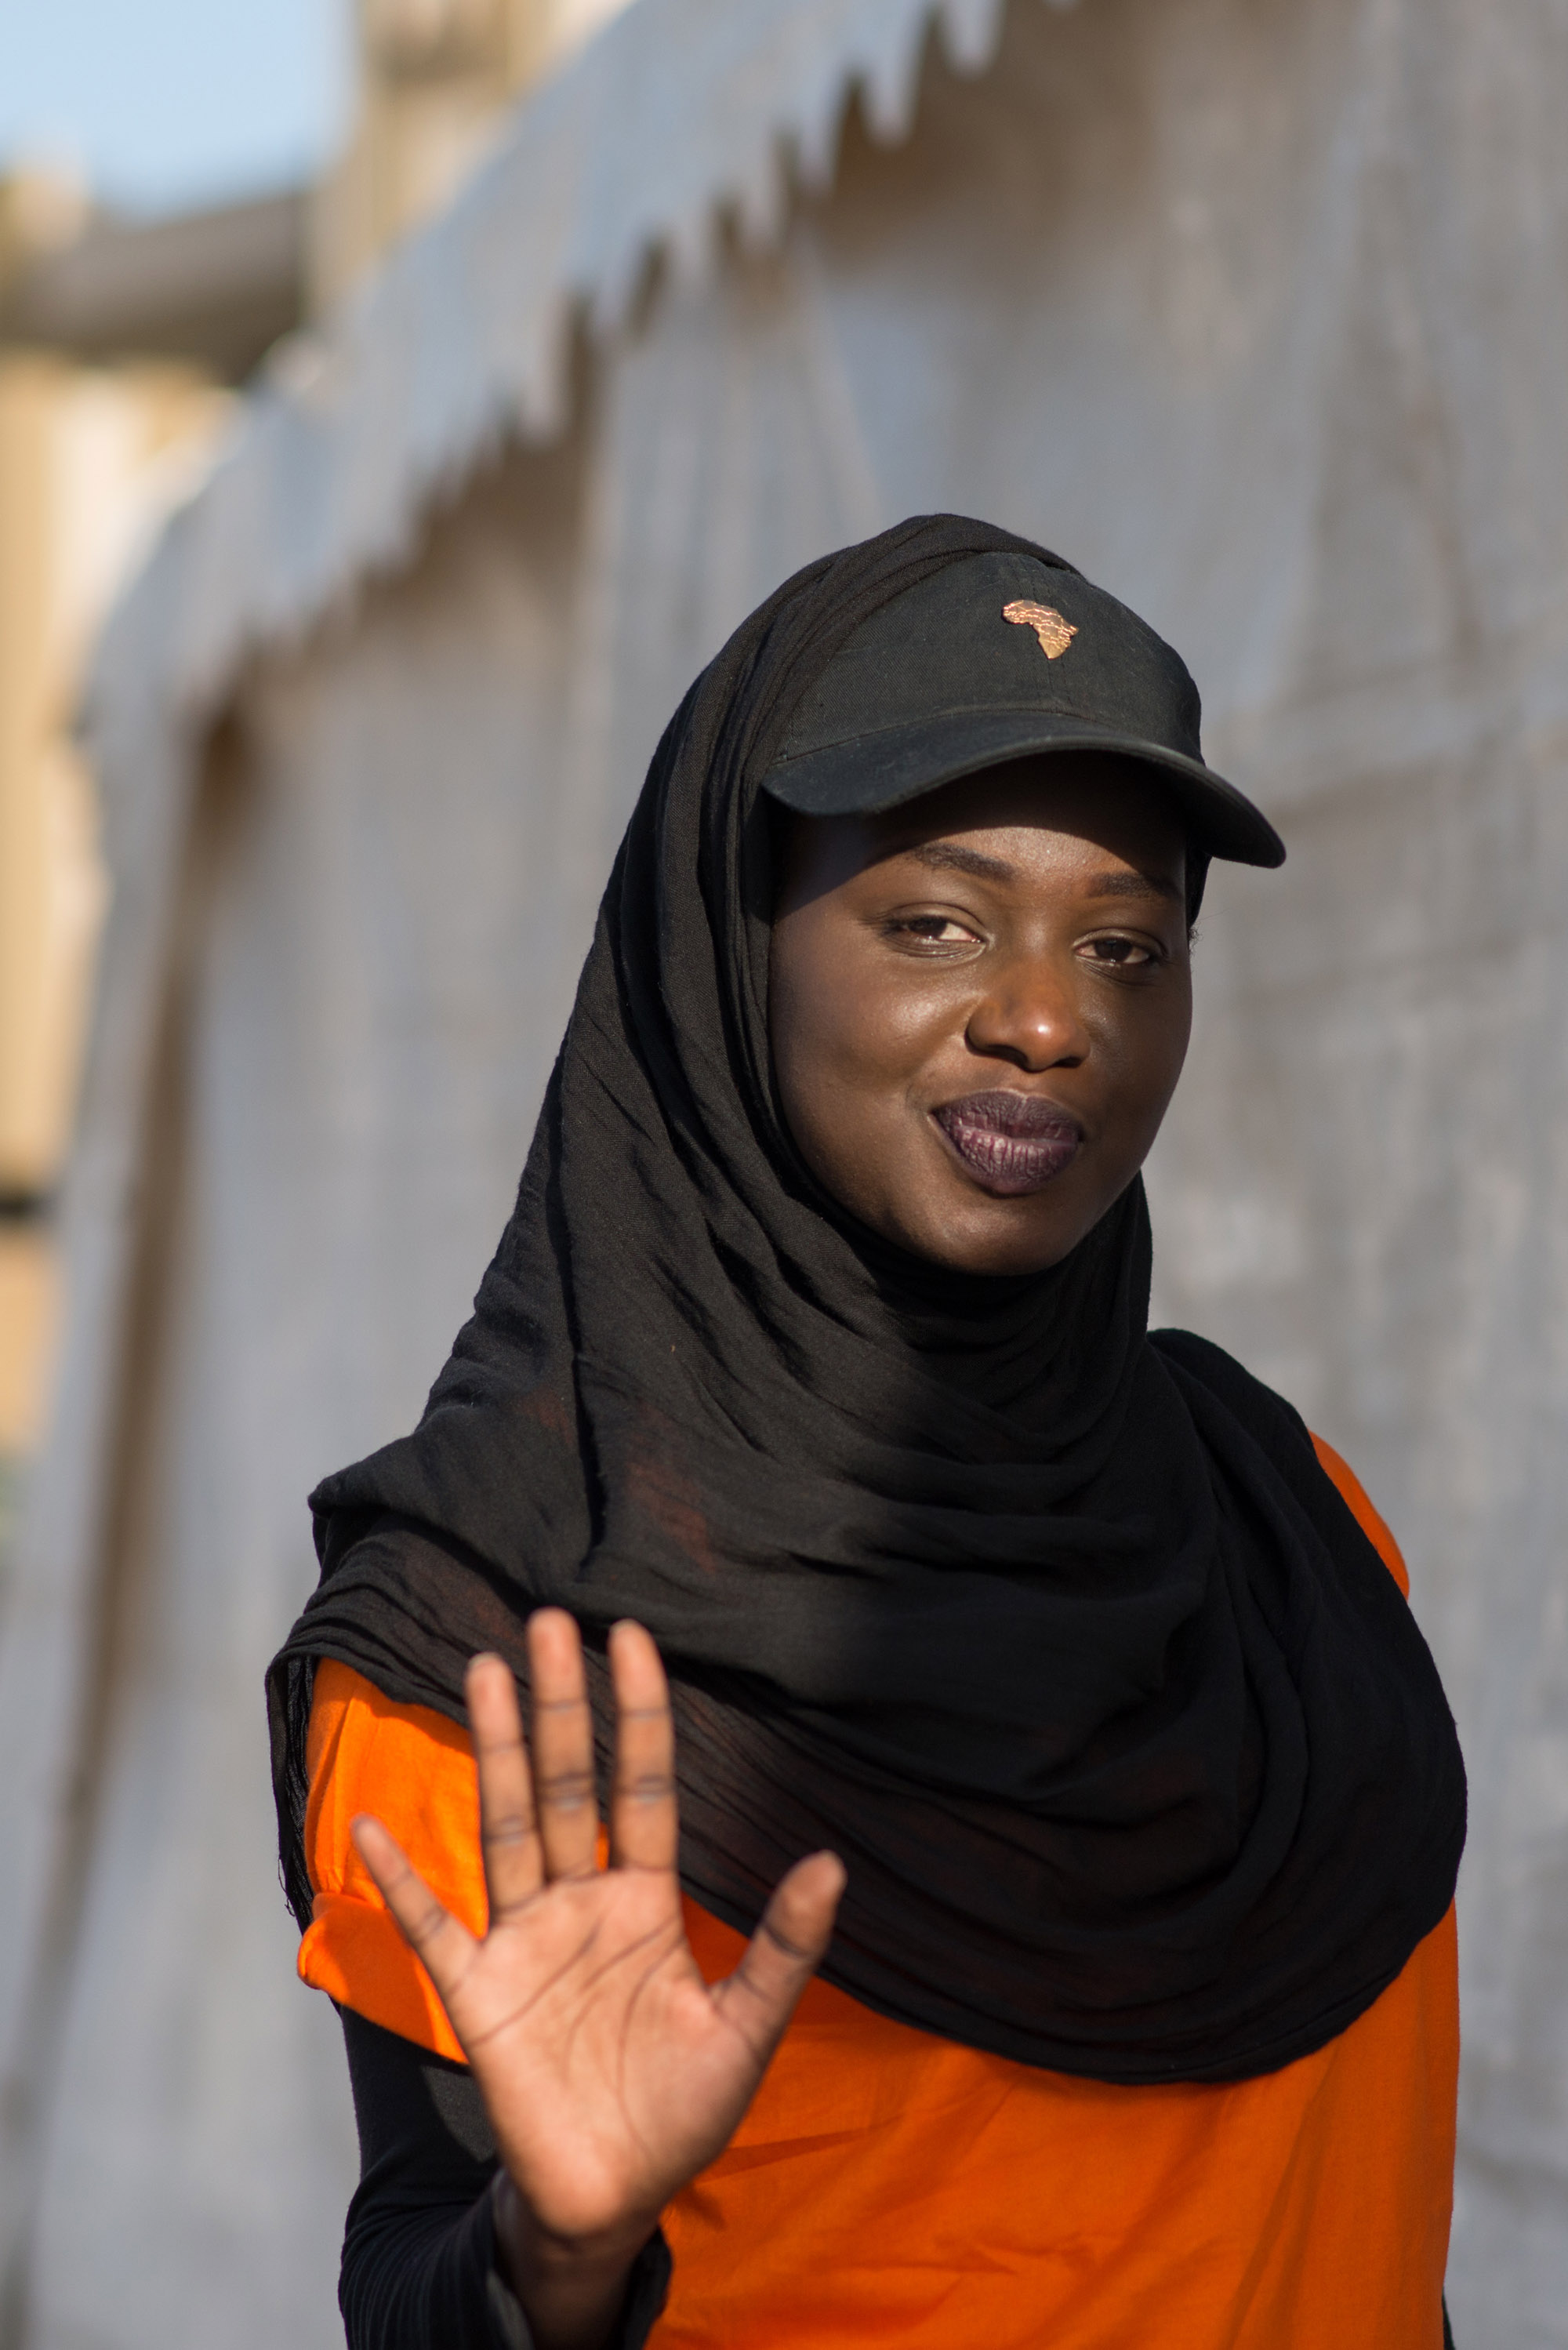 Fatima Zahra Ba at the rally in Dakar.